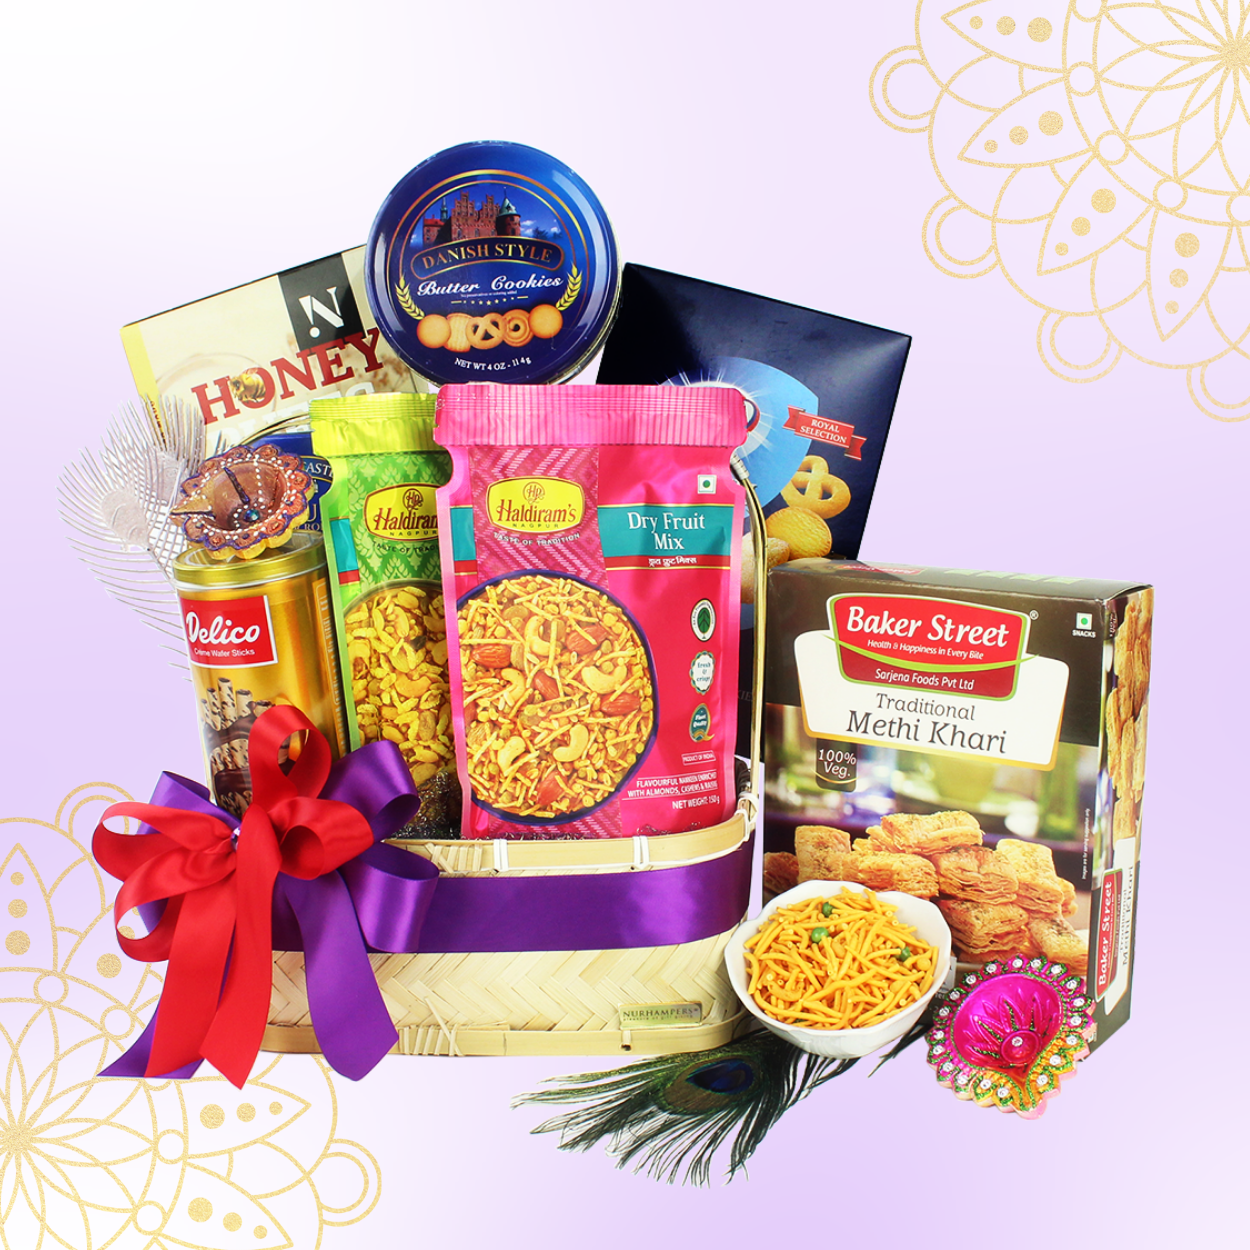 Buy/Send Diwali Greetings With Haldirams Kaju Katli Gift Hamper Online- FNP